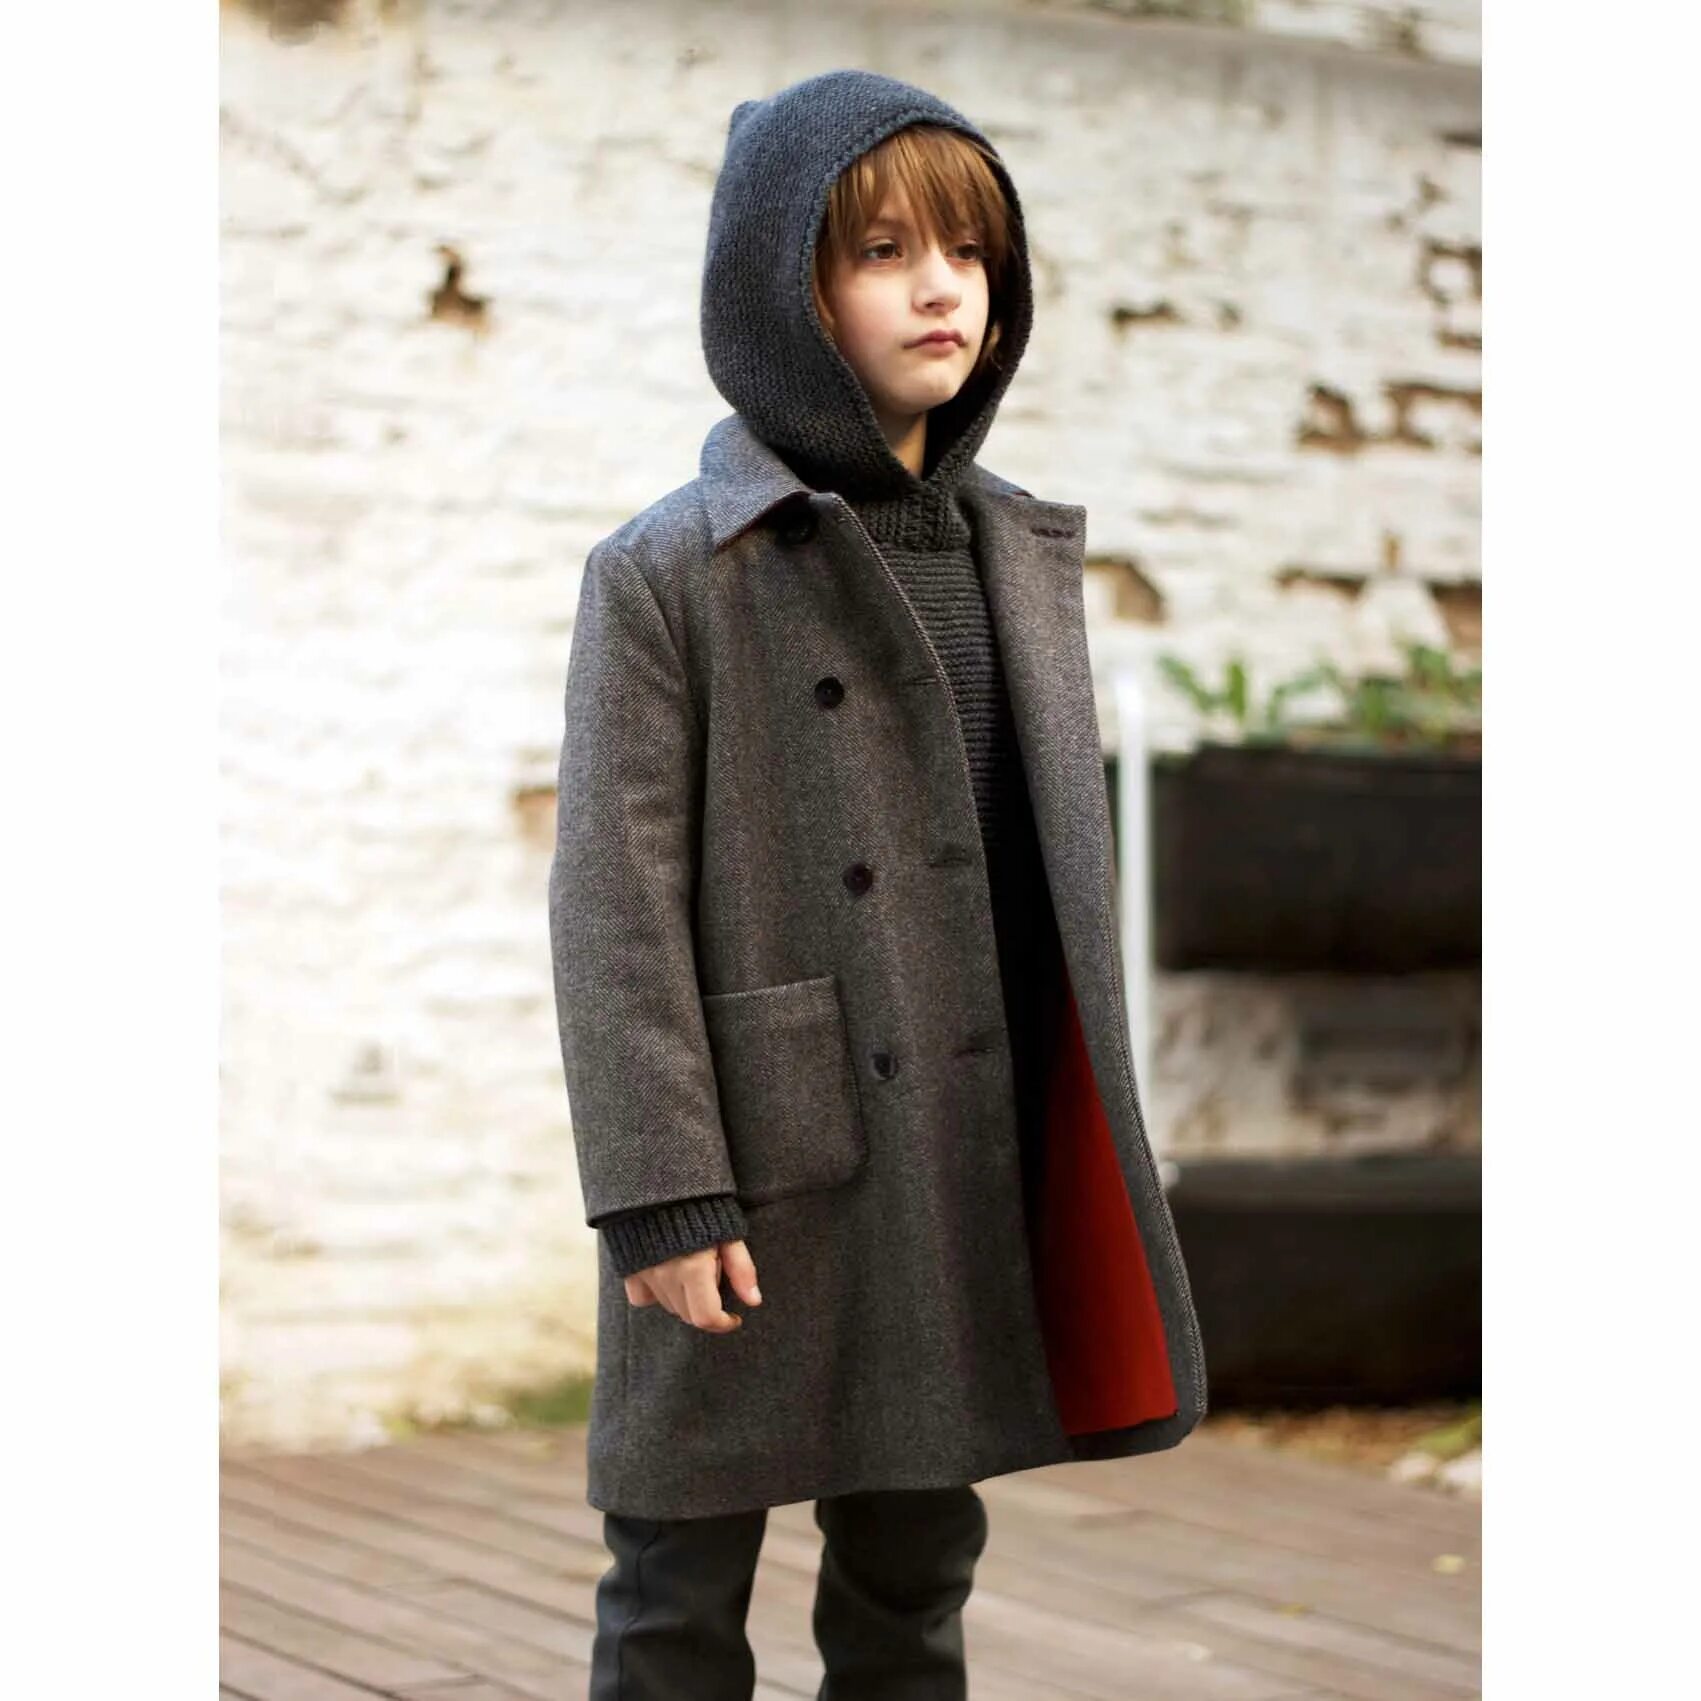 Пальто для подростка мальчика. Пальто для мальчика. Пальто драповое для мальчика. Детское пальто для мальчика.